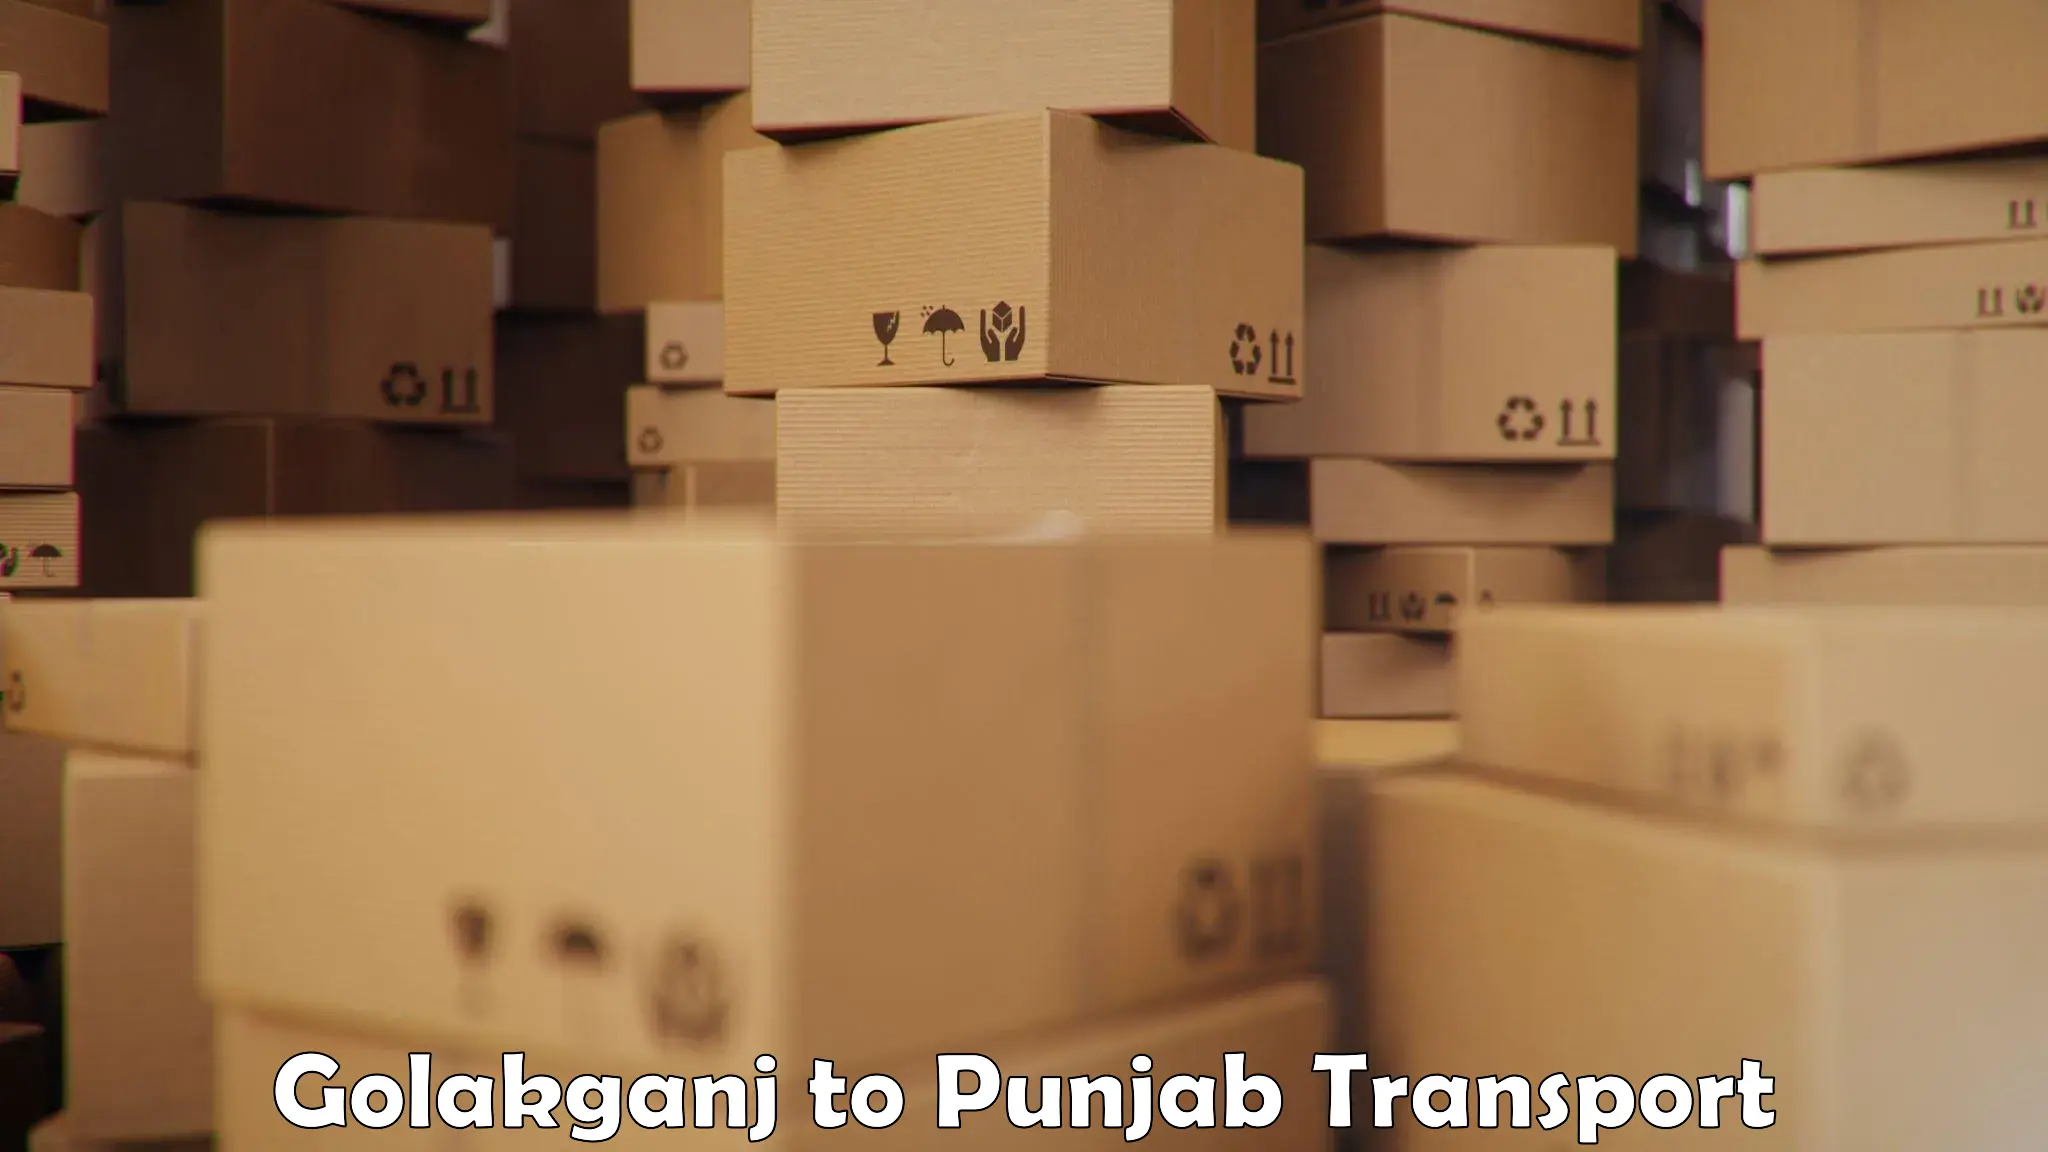 Furniture transport service Golakganj to Anandpur Sahib